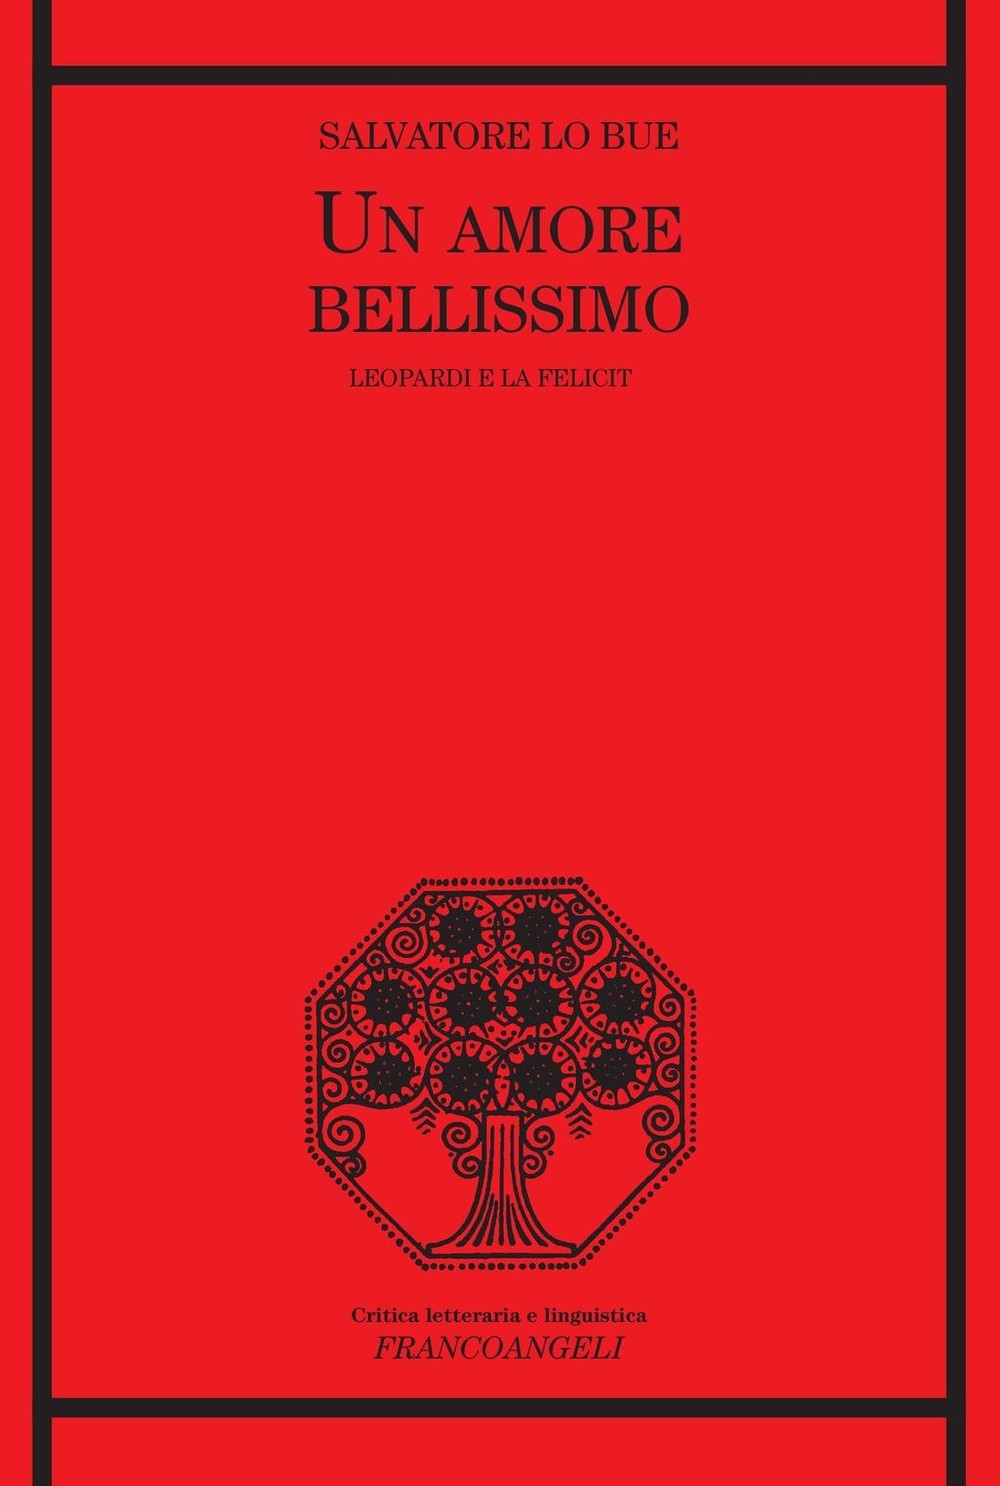  Salvatore Lo Bue, "Un amore bellissimo" (Ed. Franco Angeli)